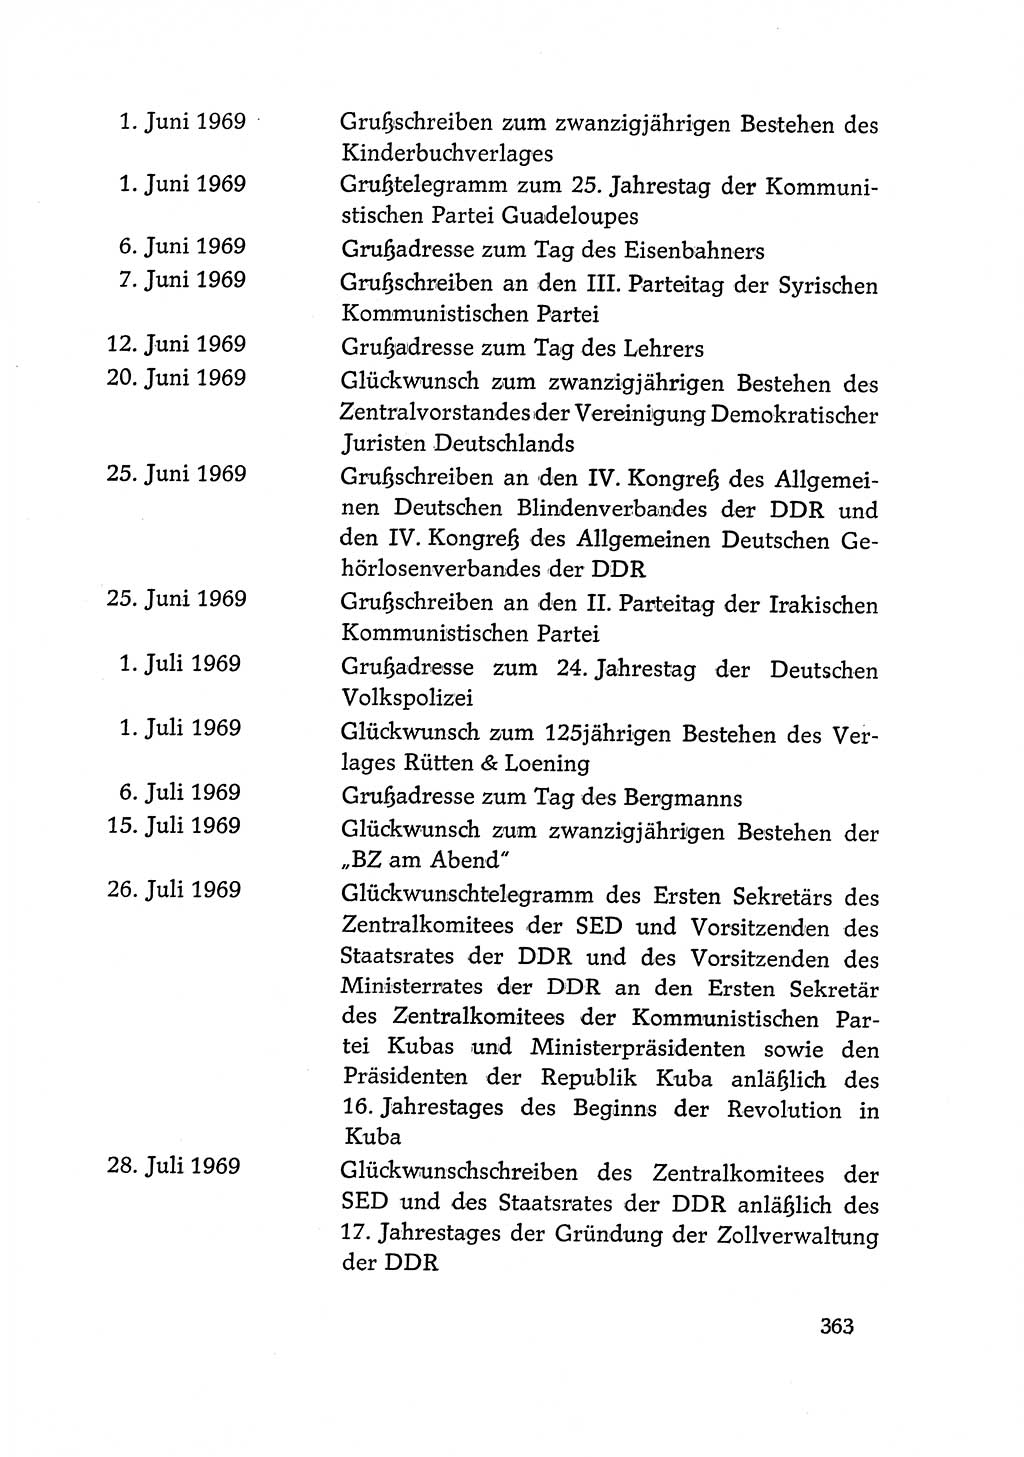 Dokumente der Sozialistischen Einheitspartei Deutschlands (SED) [Deutsche Demokratische Republik (DDR)] 1968-1969, Seite 363 (Dok. SED DDR 1968-1969, S. 363)